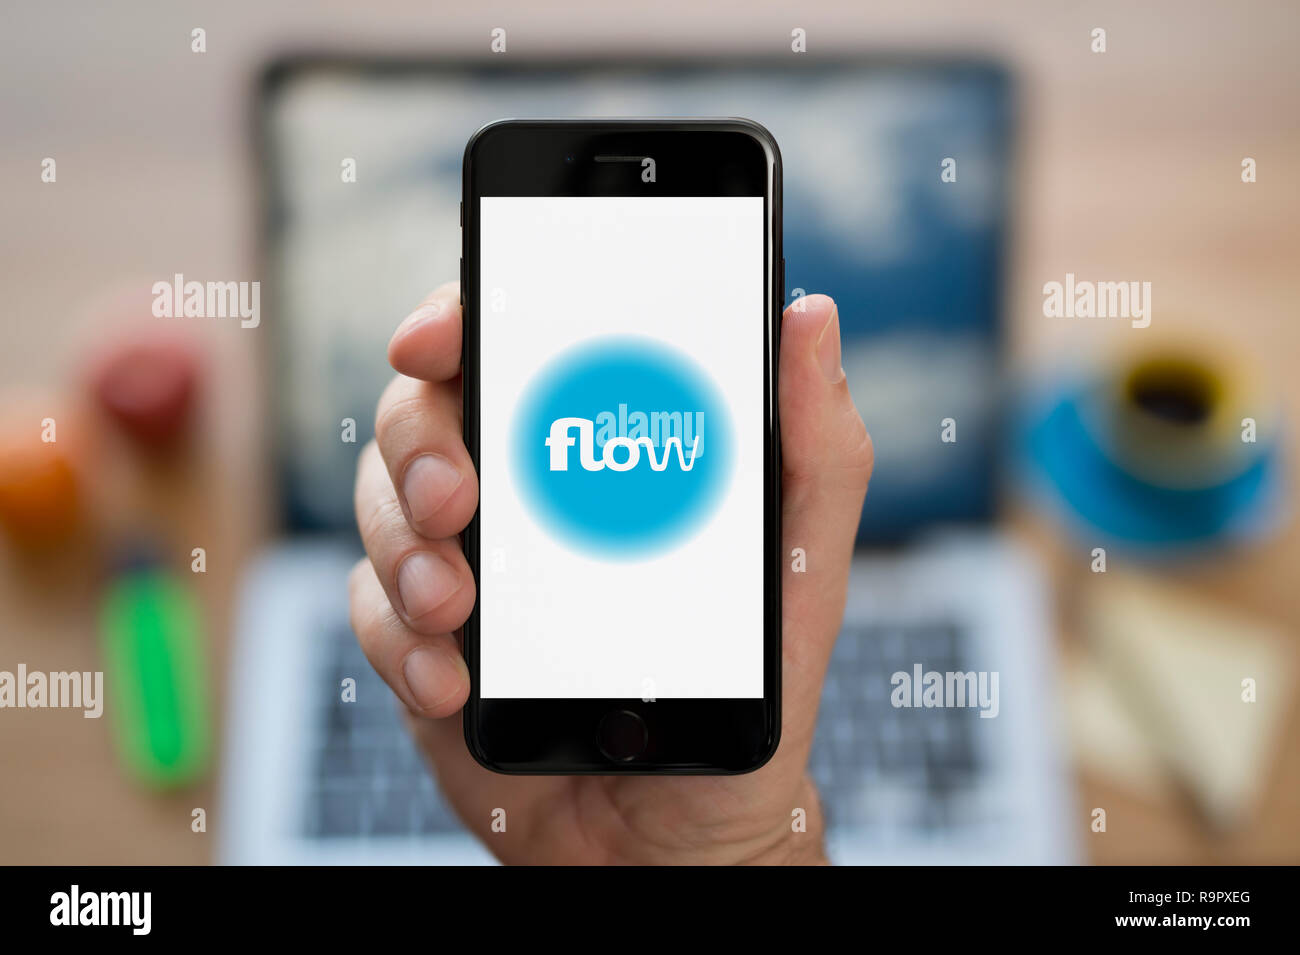 Un homme se penche sur son iPhone qui affiche le logo de l'énergie de flux (usage éditorial uniquement). Banque D'Images